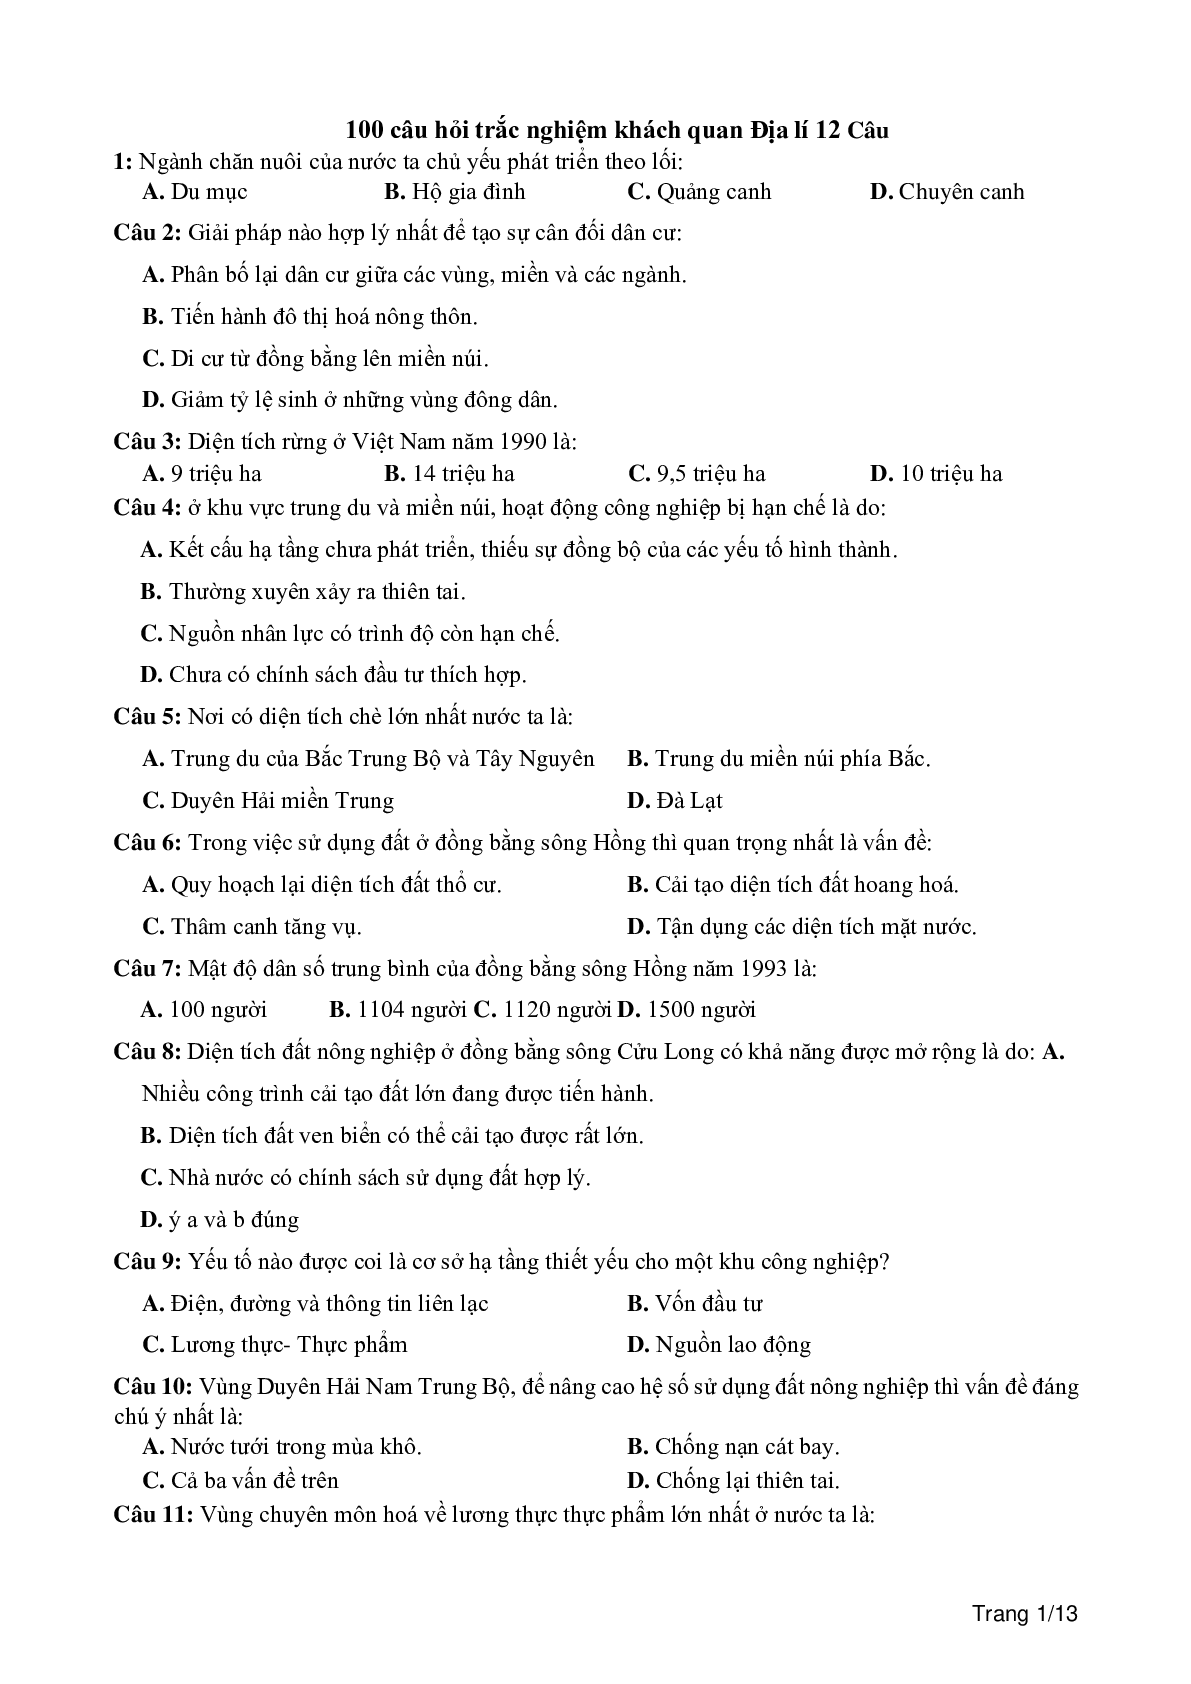 100 câu trắc nghiệm khách quan môn Địa lí lớp 12 (trang 1)